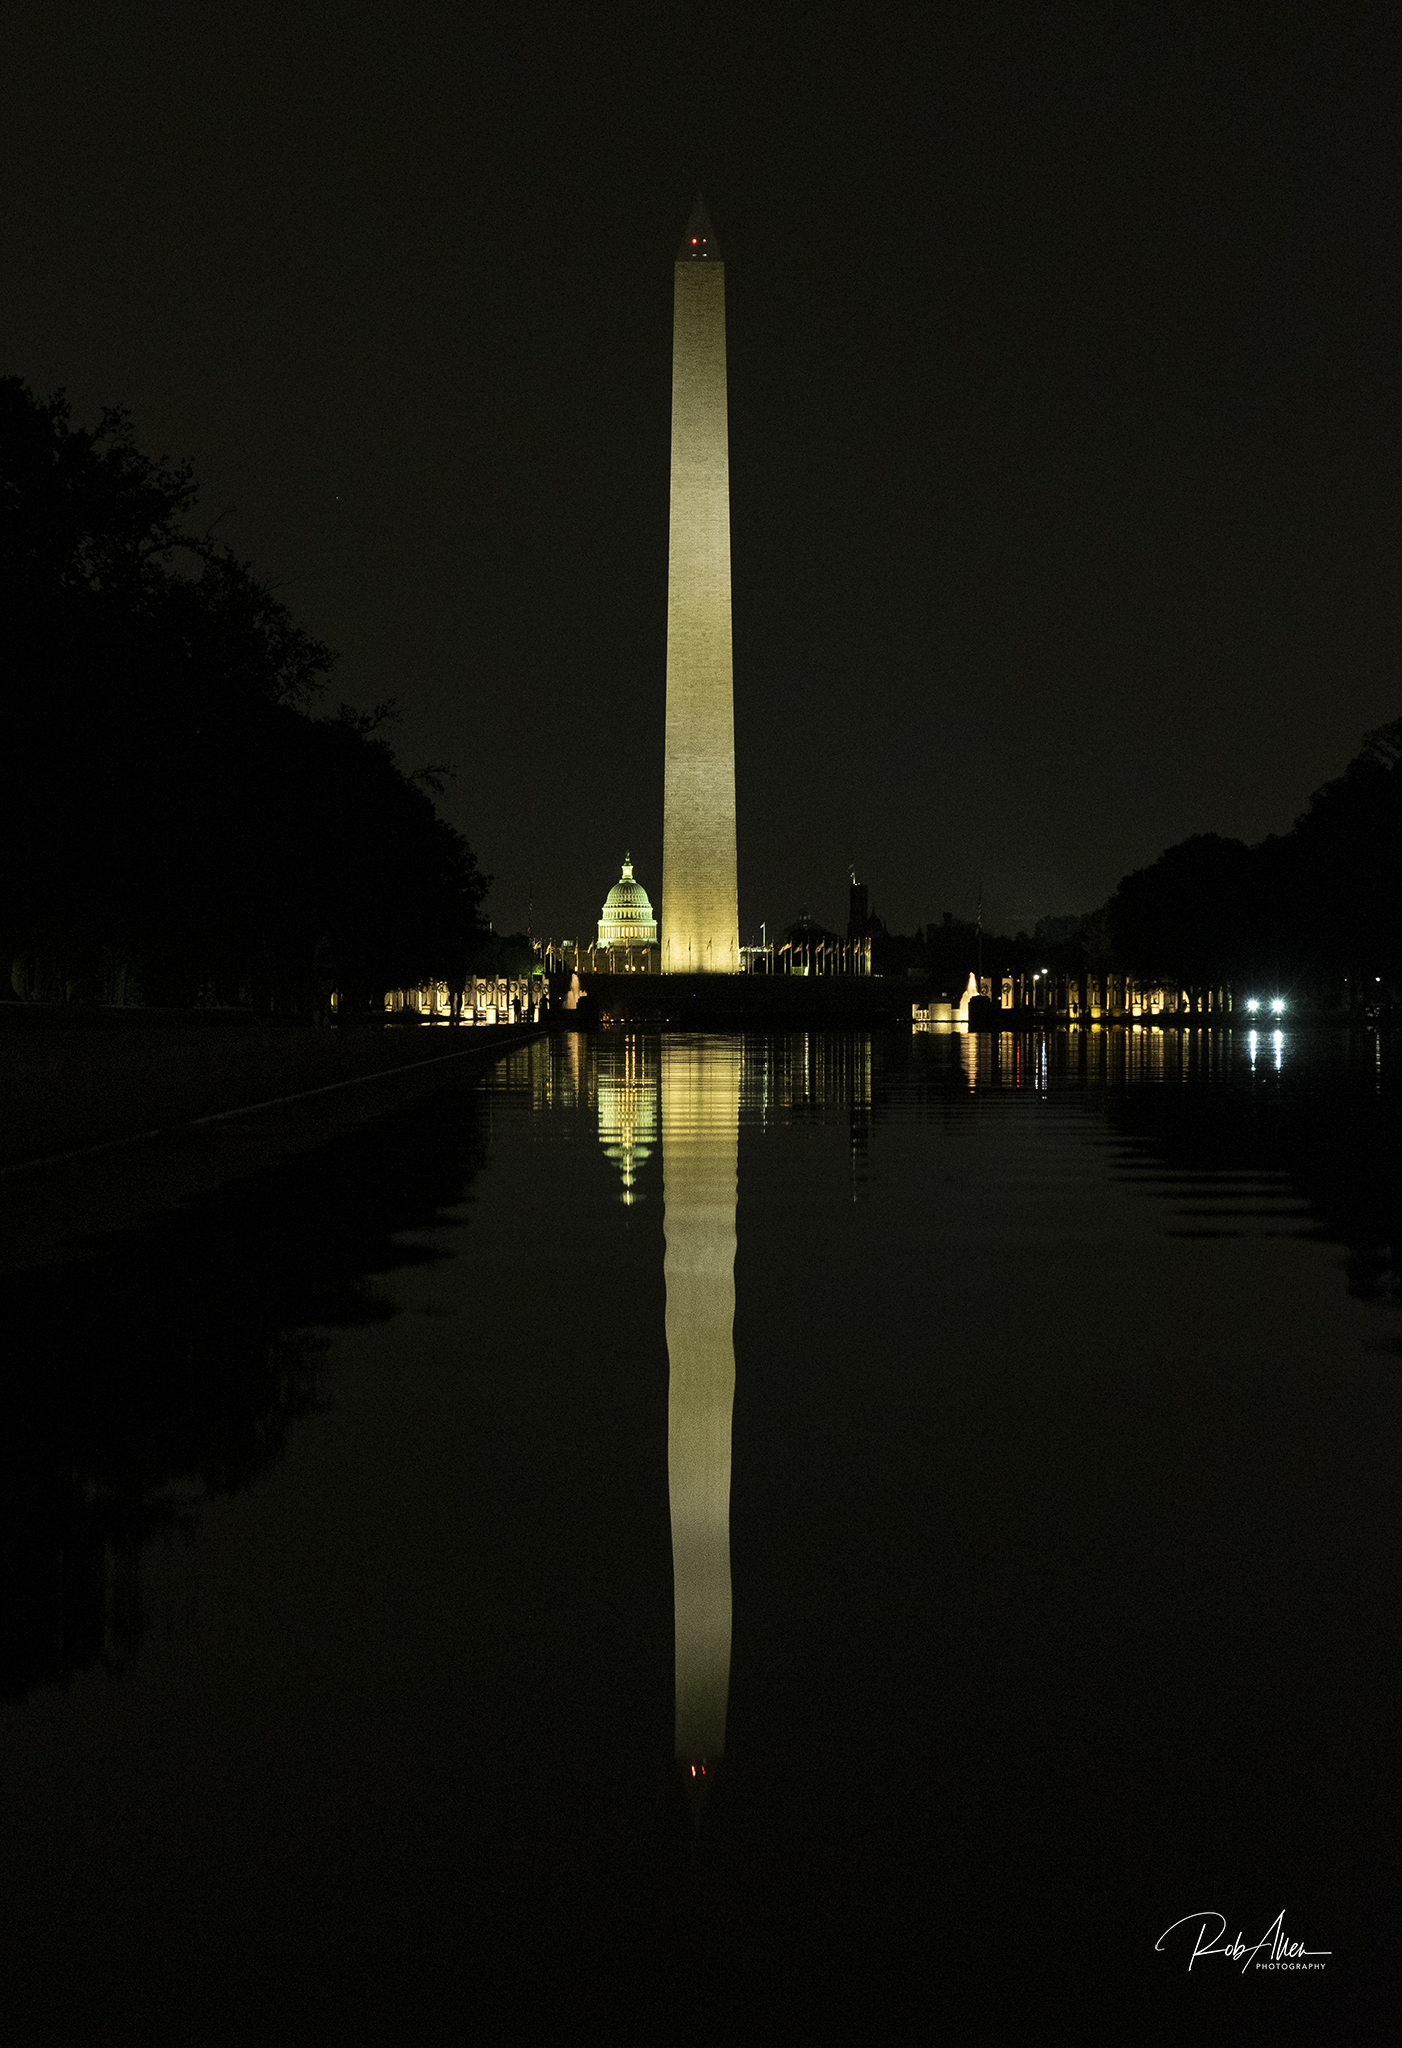 Washington's Reflection